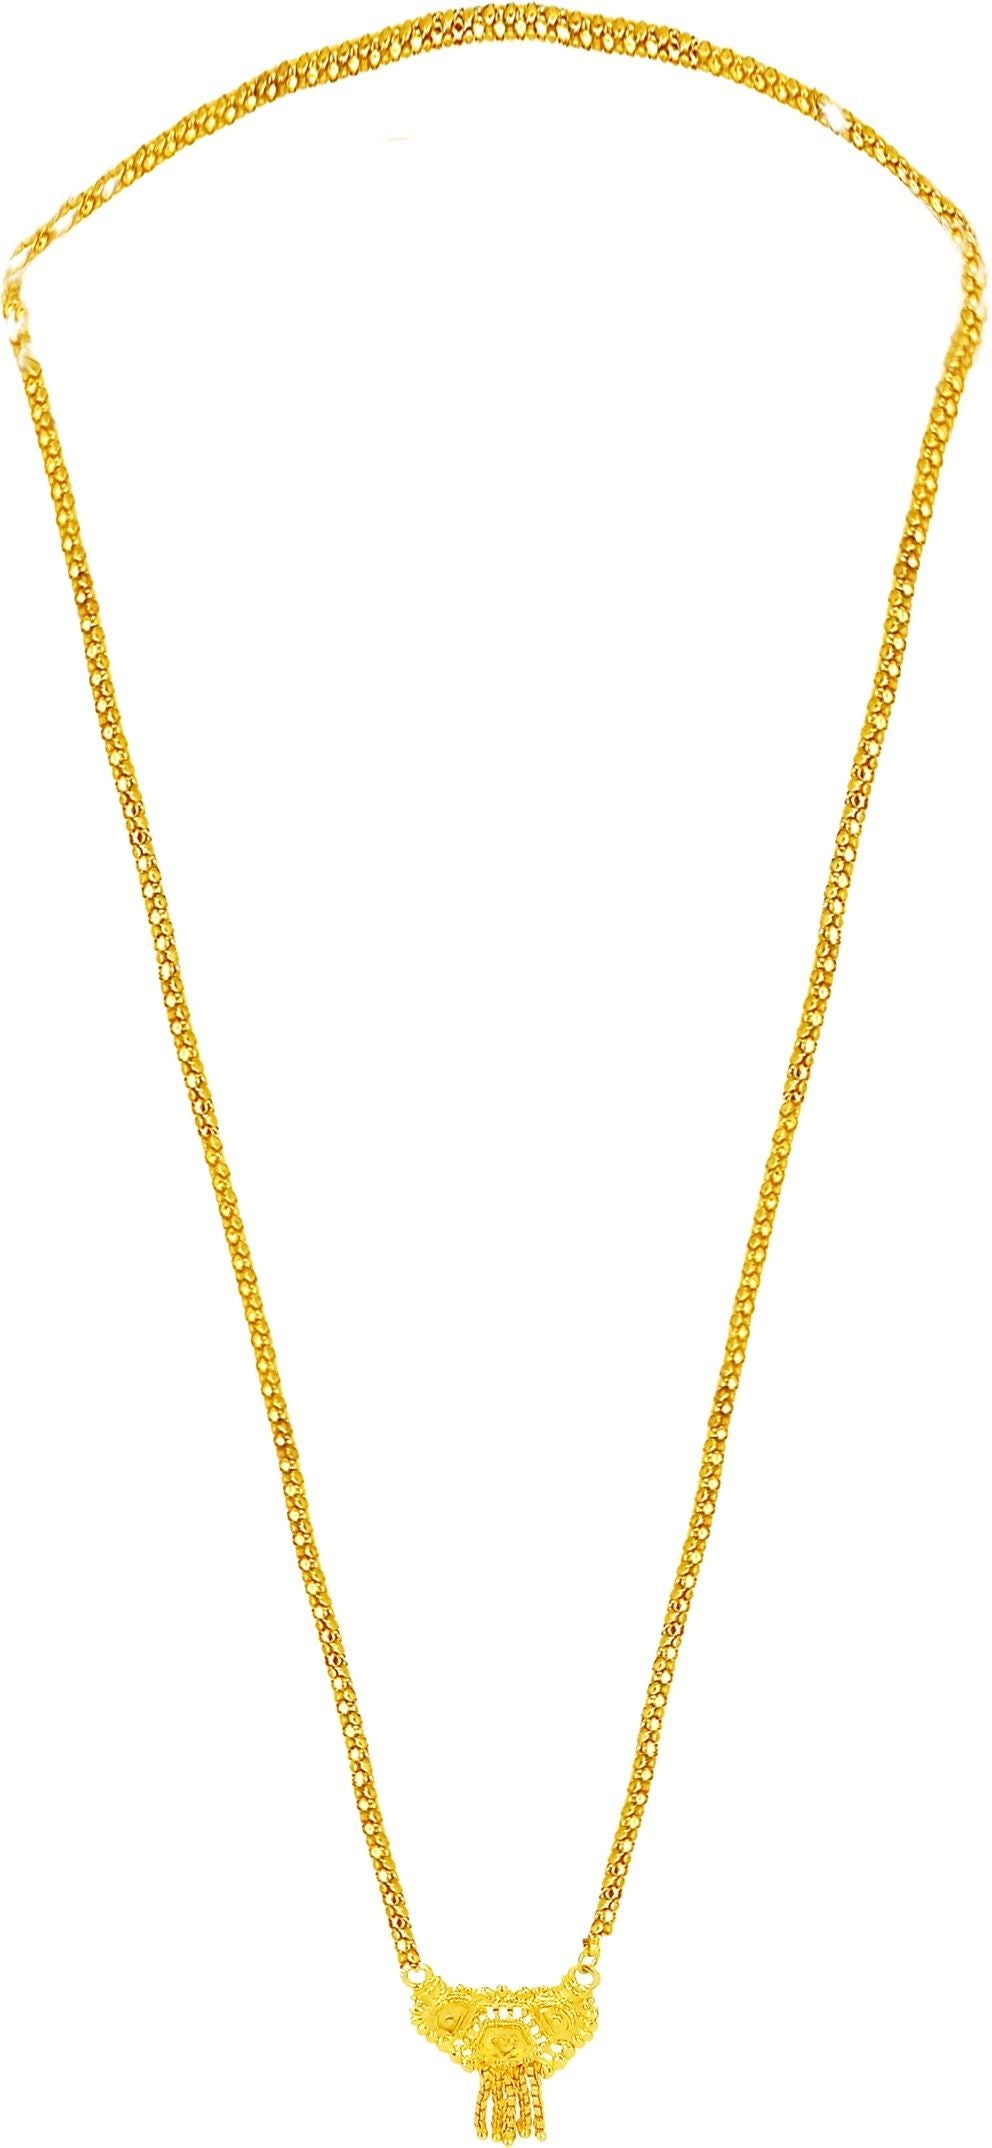 Pretty Gold Plated Necklace  Glitstudio   